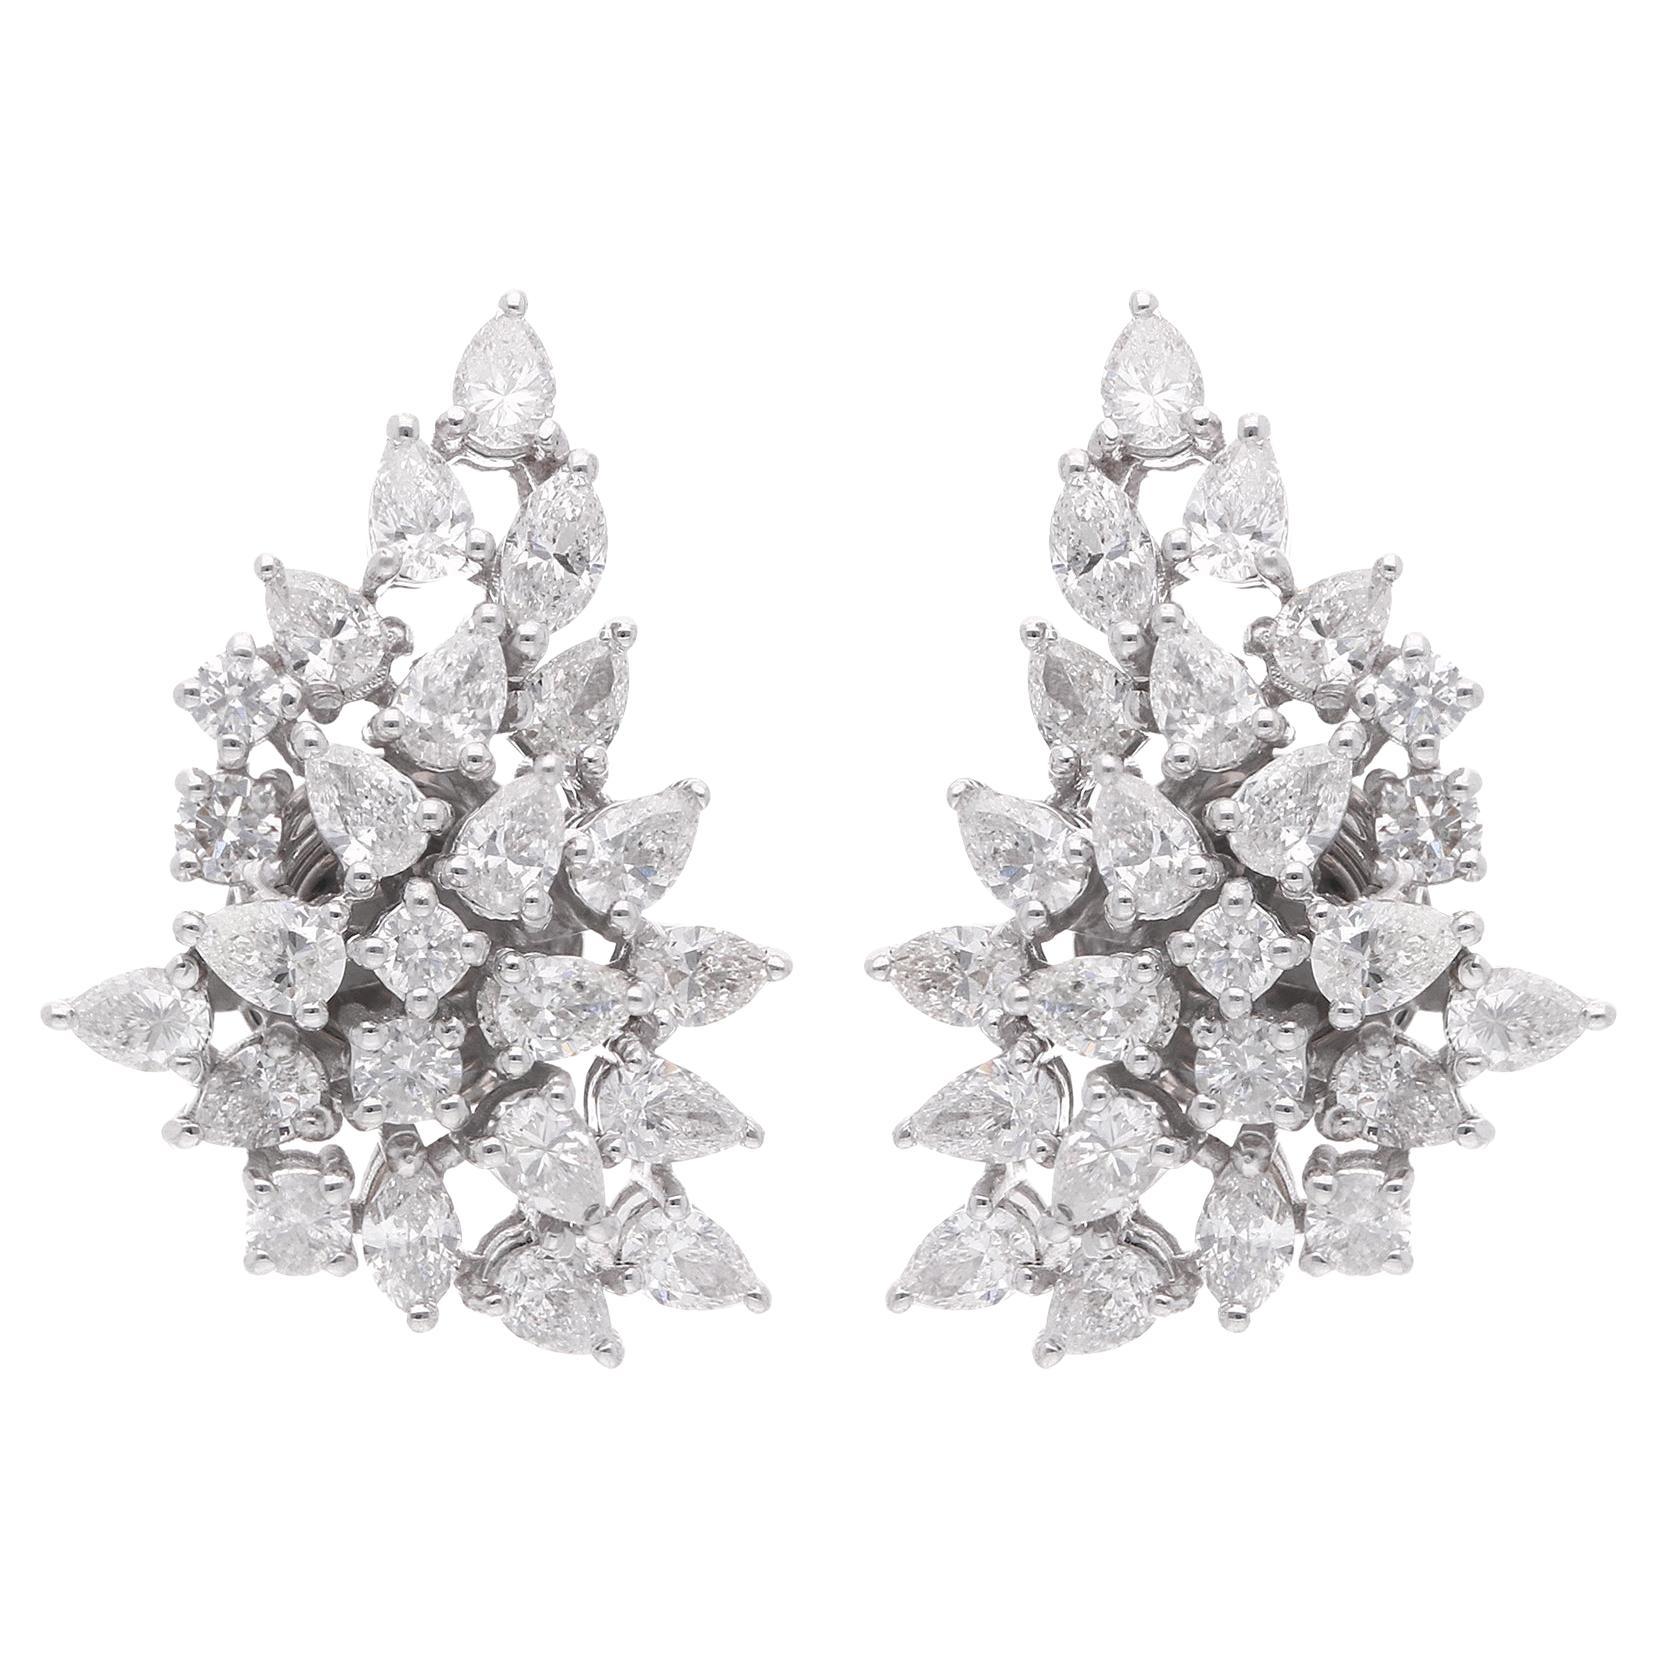 Boucles d'oreilles en or blanc 18 carats avec diamants SI/HI en forme de poire ou de marquise de 2,1 carats.